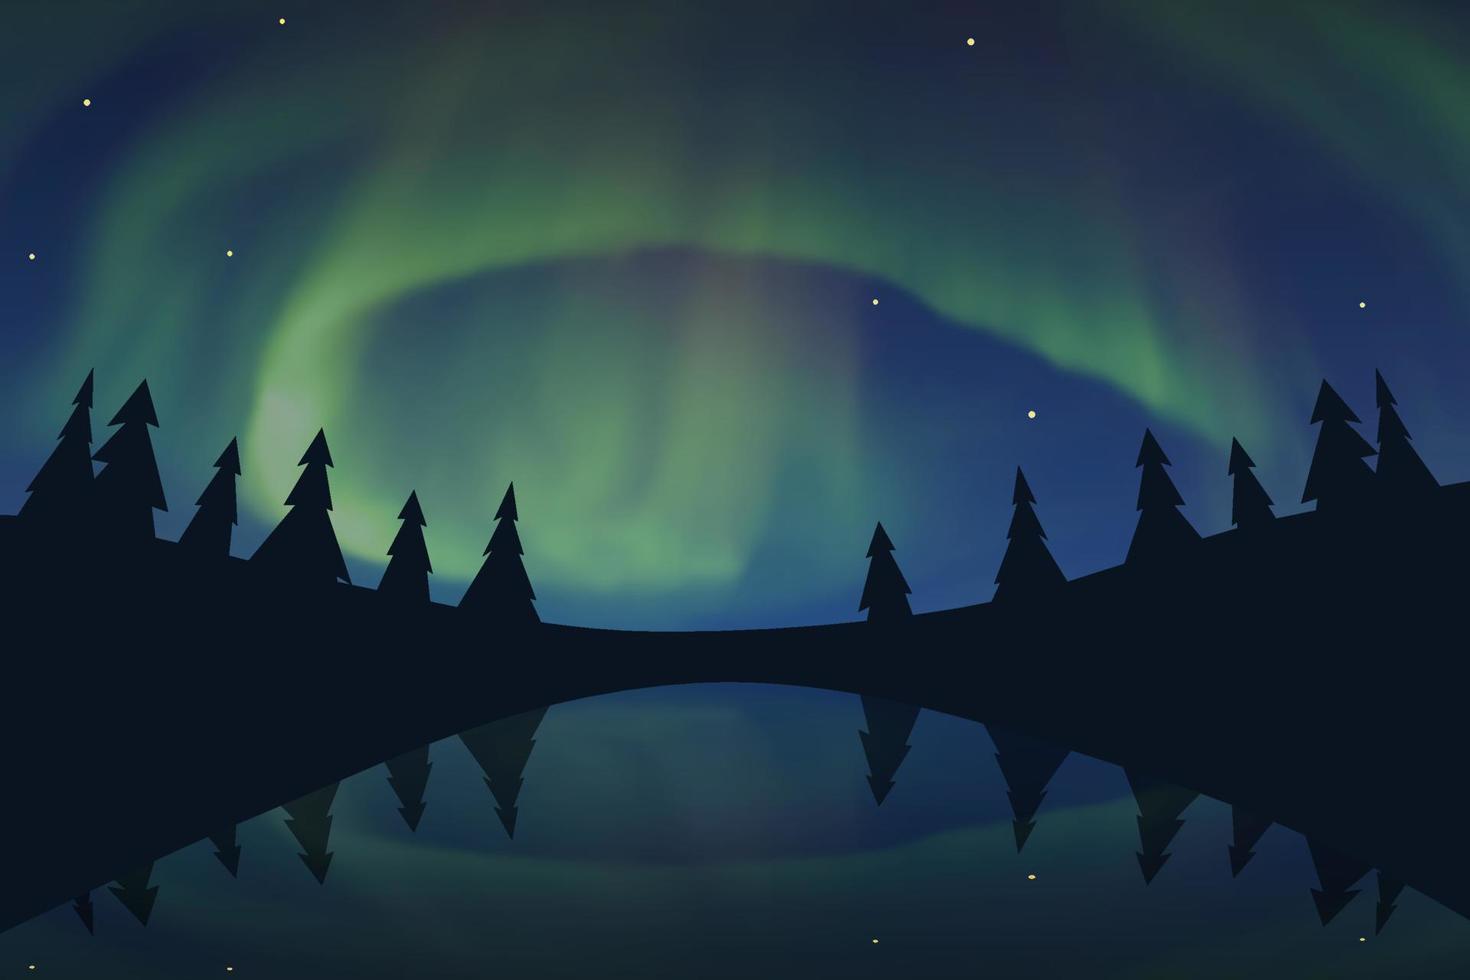 noorderlicht, aurora borealis in arctische nachtelijke hemel met sterren, bomen, weerspiegeld in het water. vectorillustratie van poollicht. vector